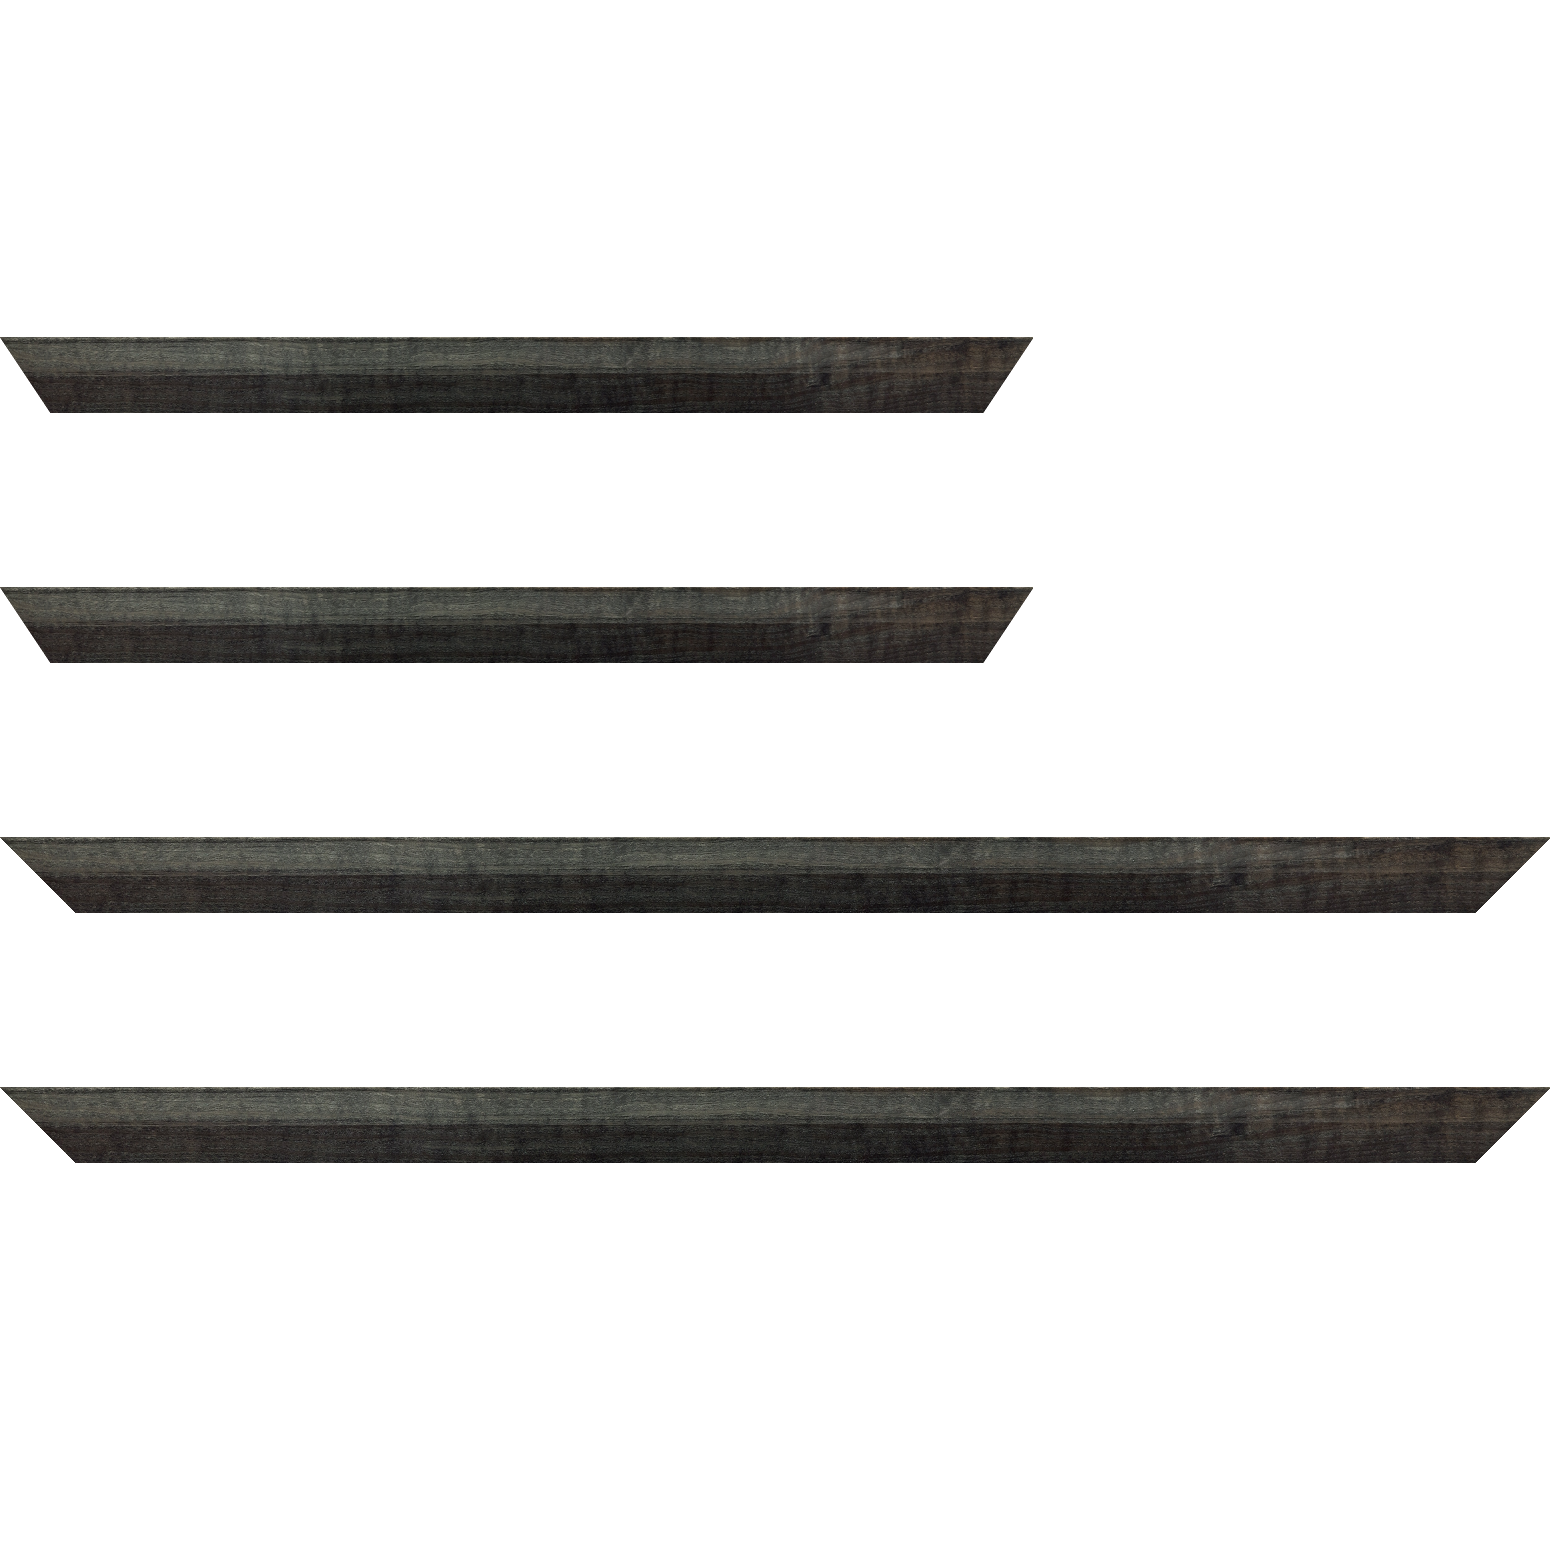 Baguette bois profil arrondi en pente plongeant largeur 2.4cm couleur  gris foncé anthracite finition vernis brillant,veine du bois  apparent (pin) , - 34x40